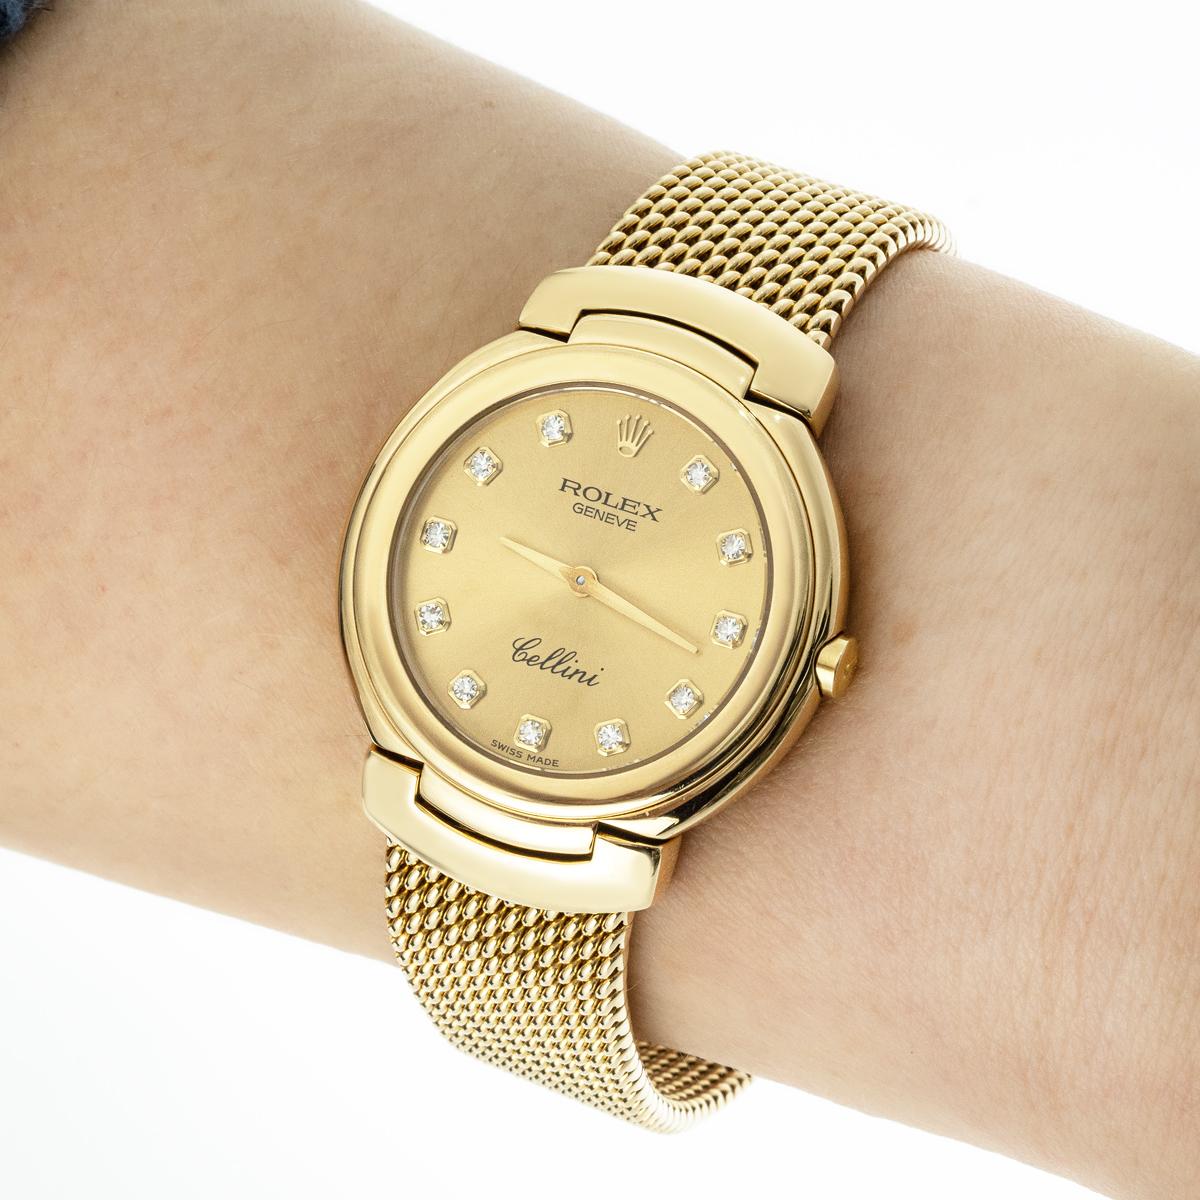 Eine Cellini-Armbanduhr aus Gelbgold von Rolex. Mit einem champagnerfarbenen Zifferblatt mit diamantbesetzten Ziffern und einer Lünette aus Gelbgold. Ausgestattet mit einem integrierten Gelbgoldarmband und Faltschließe. Die Uhr ist außerdem mit